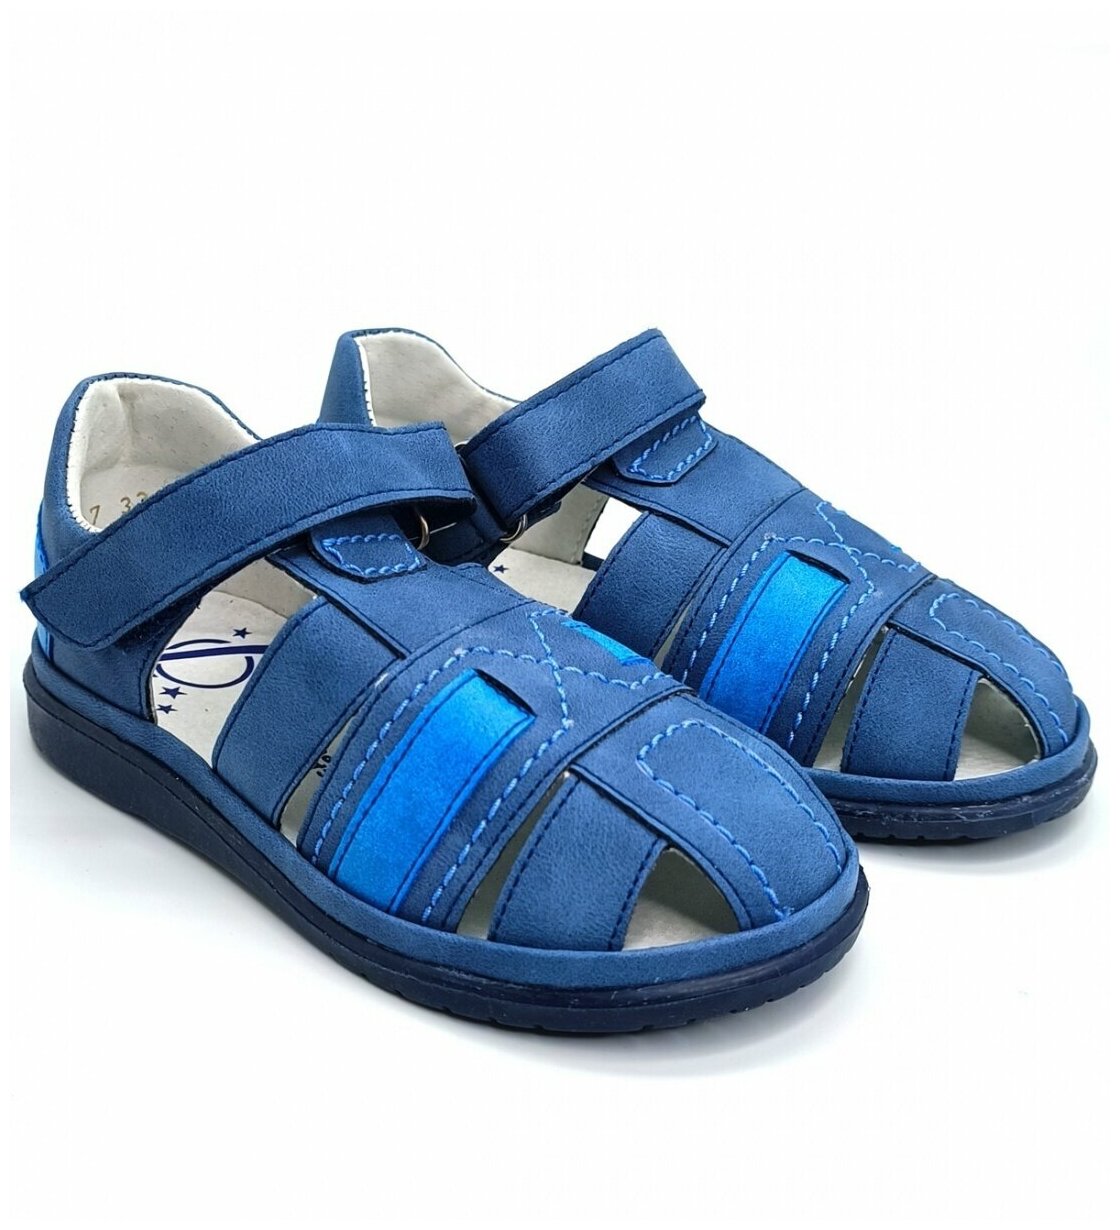 Сандалии для мальчиков цвет синий голубой бренд Bumi артикул 3305-12